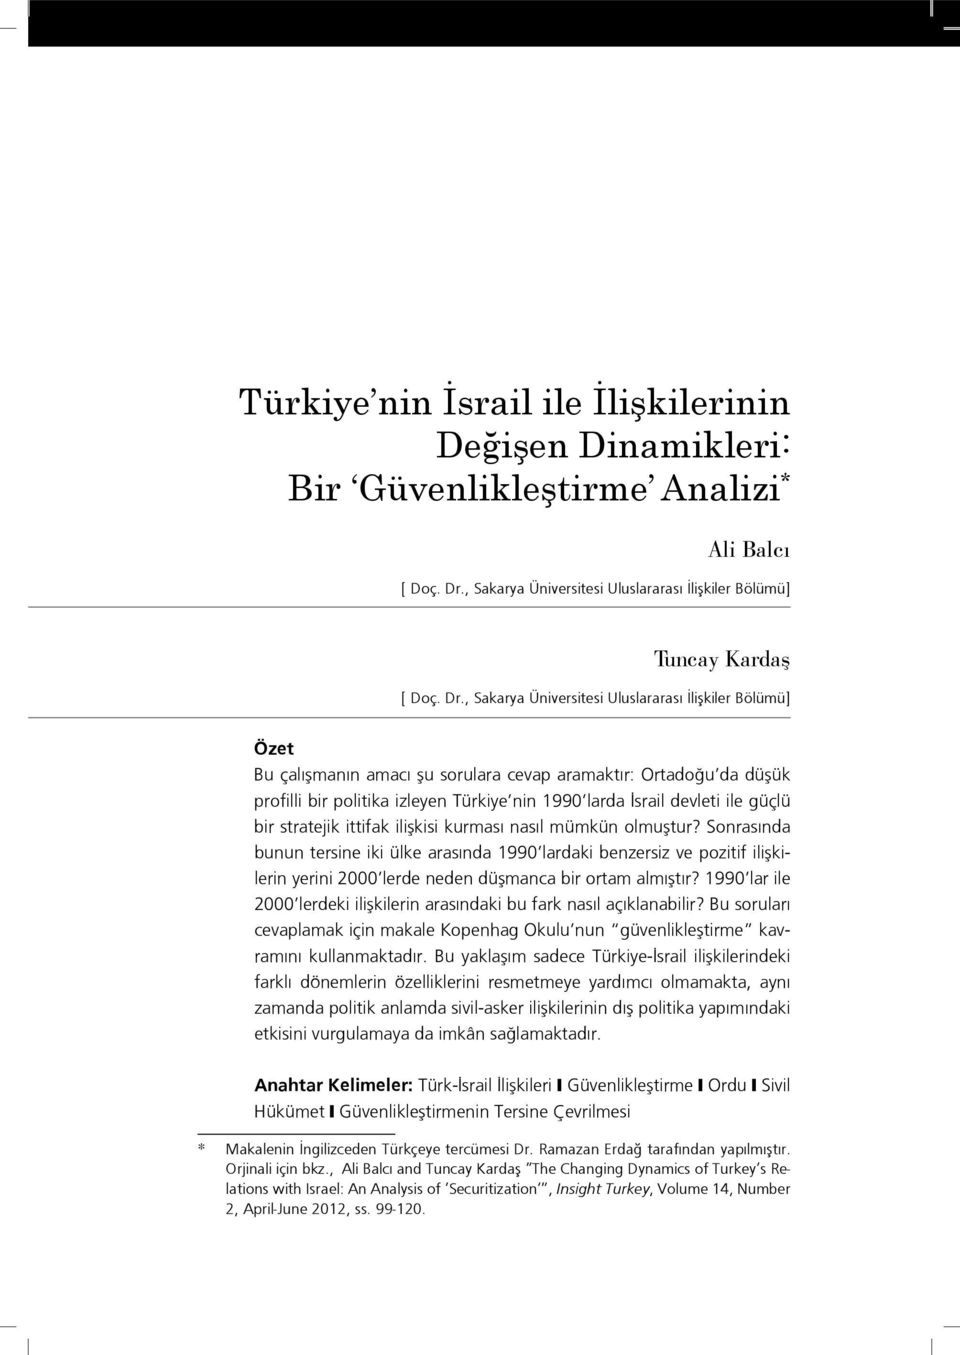 , Sakarya Üniversitesi Uluslararası İlişkiler Bölümü] Özet Bu çalışmanın amacı şu sorulara cevap aramaktır: Ortadoğu da düşük profilli bir politika izleyen Türkiye nin 1990 larda İsrail devleti ile